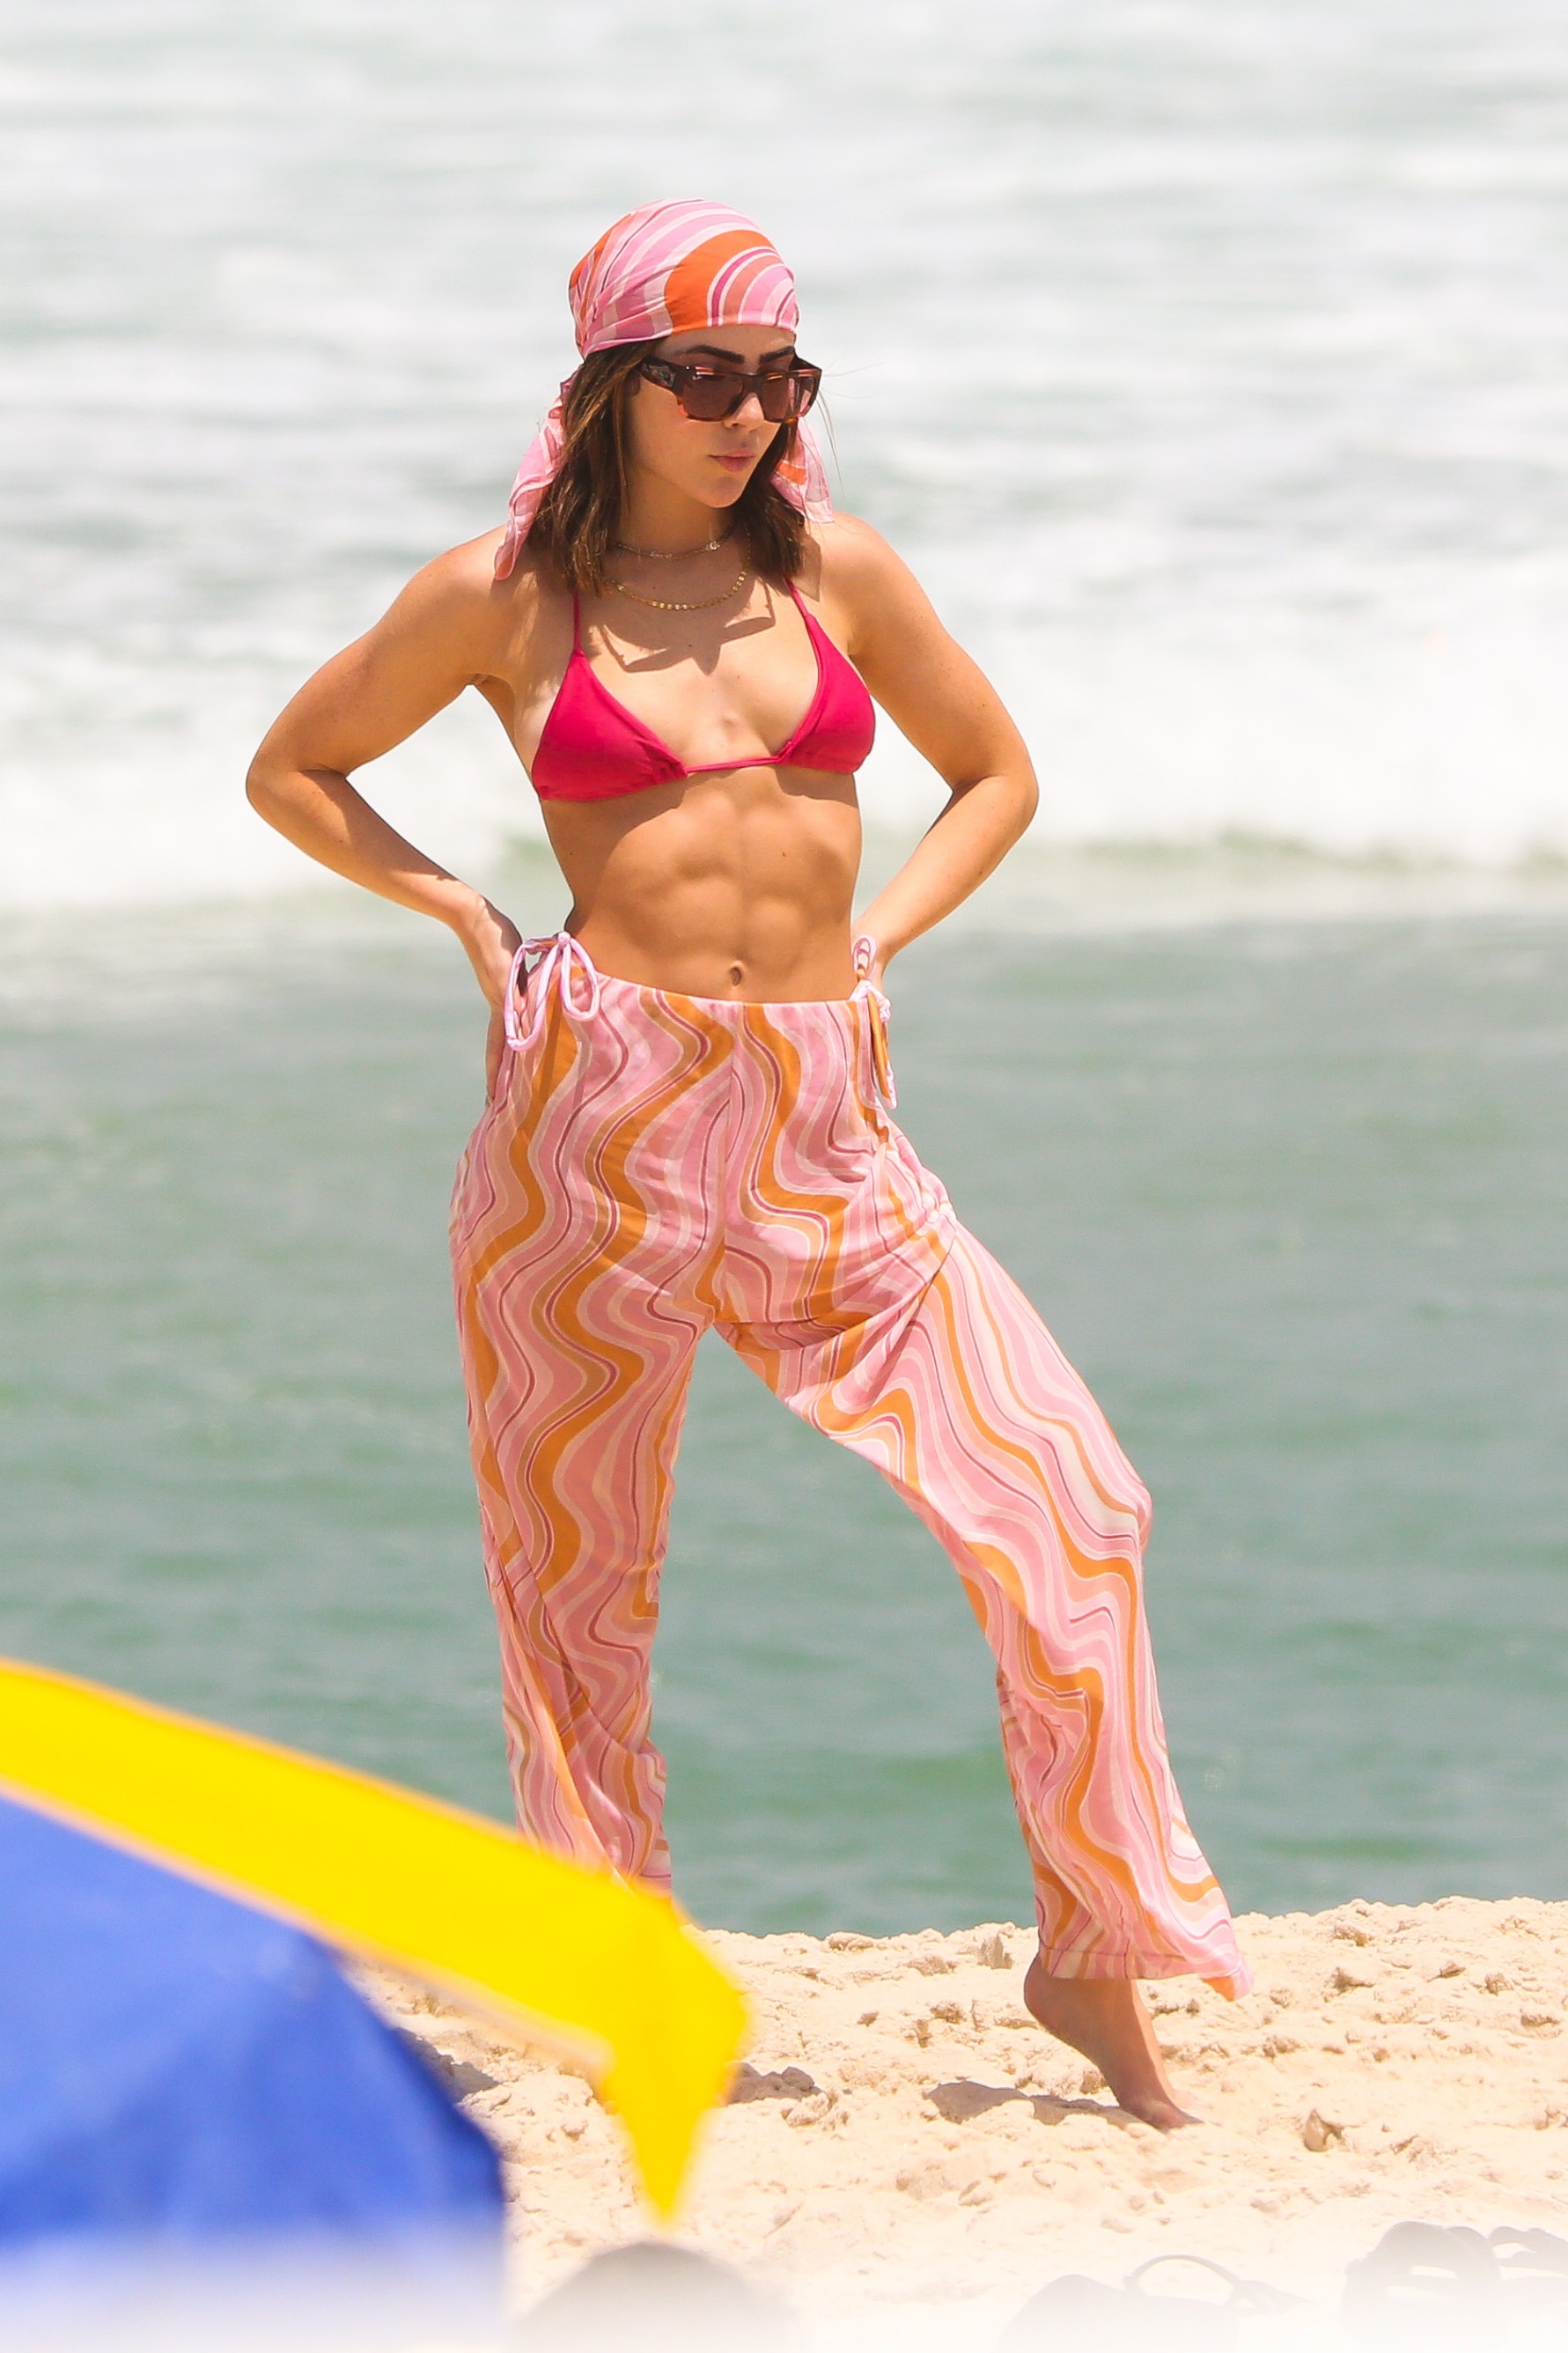 Jade Picon curte praia com Duda Santos, amiga do elenco de